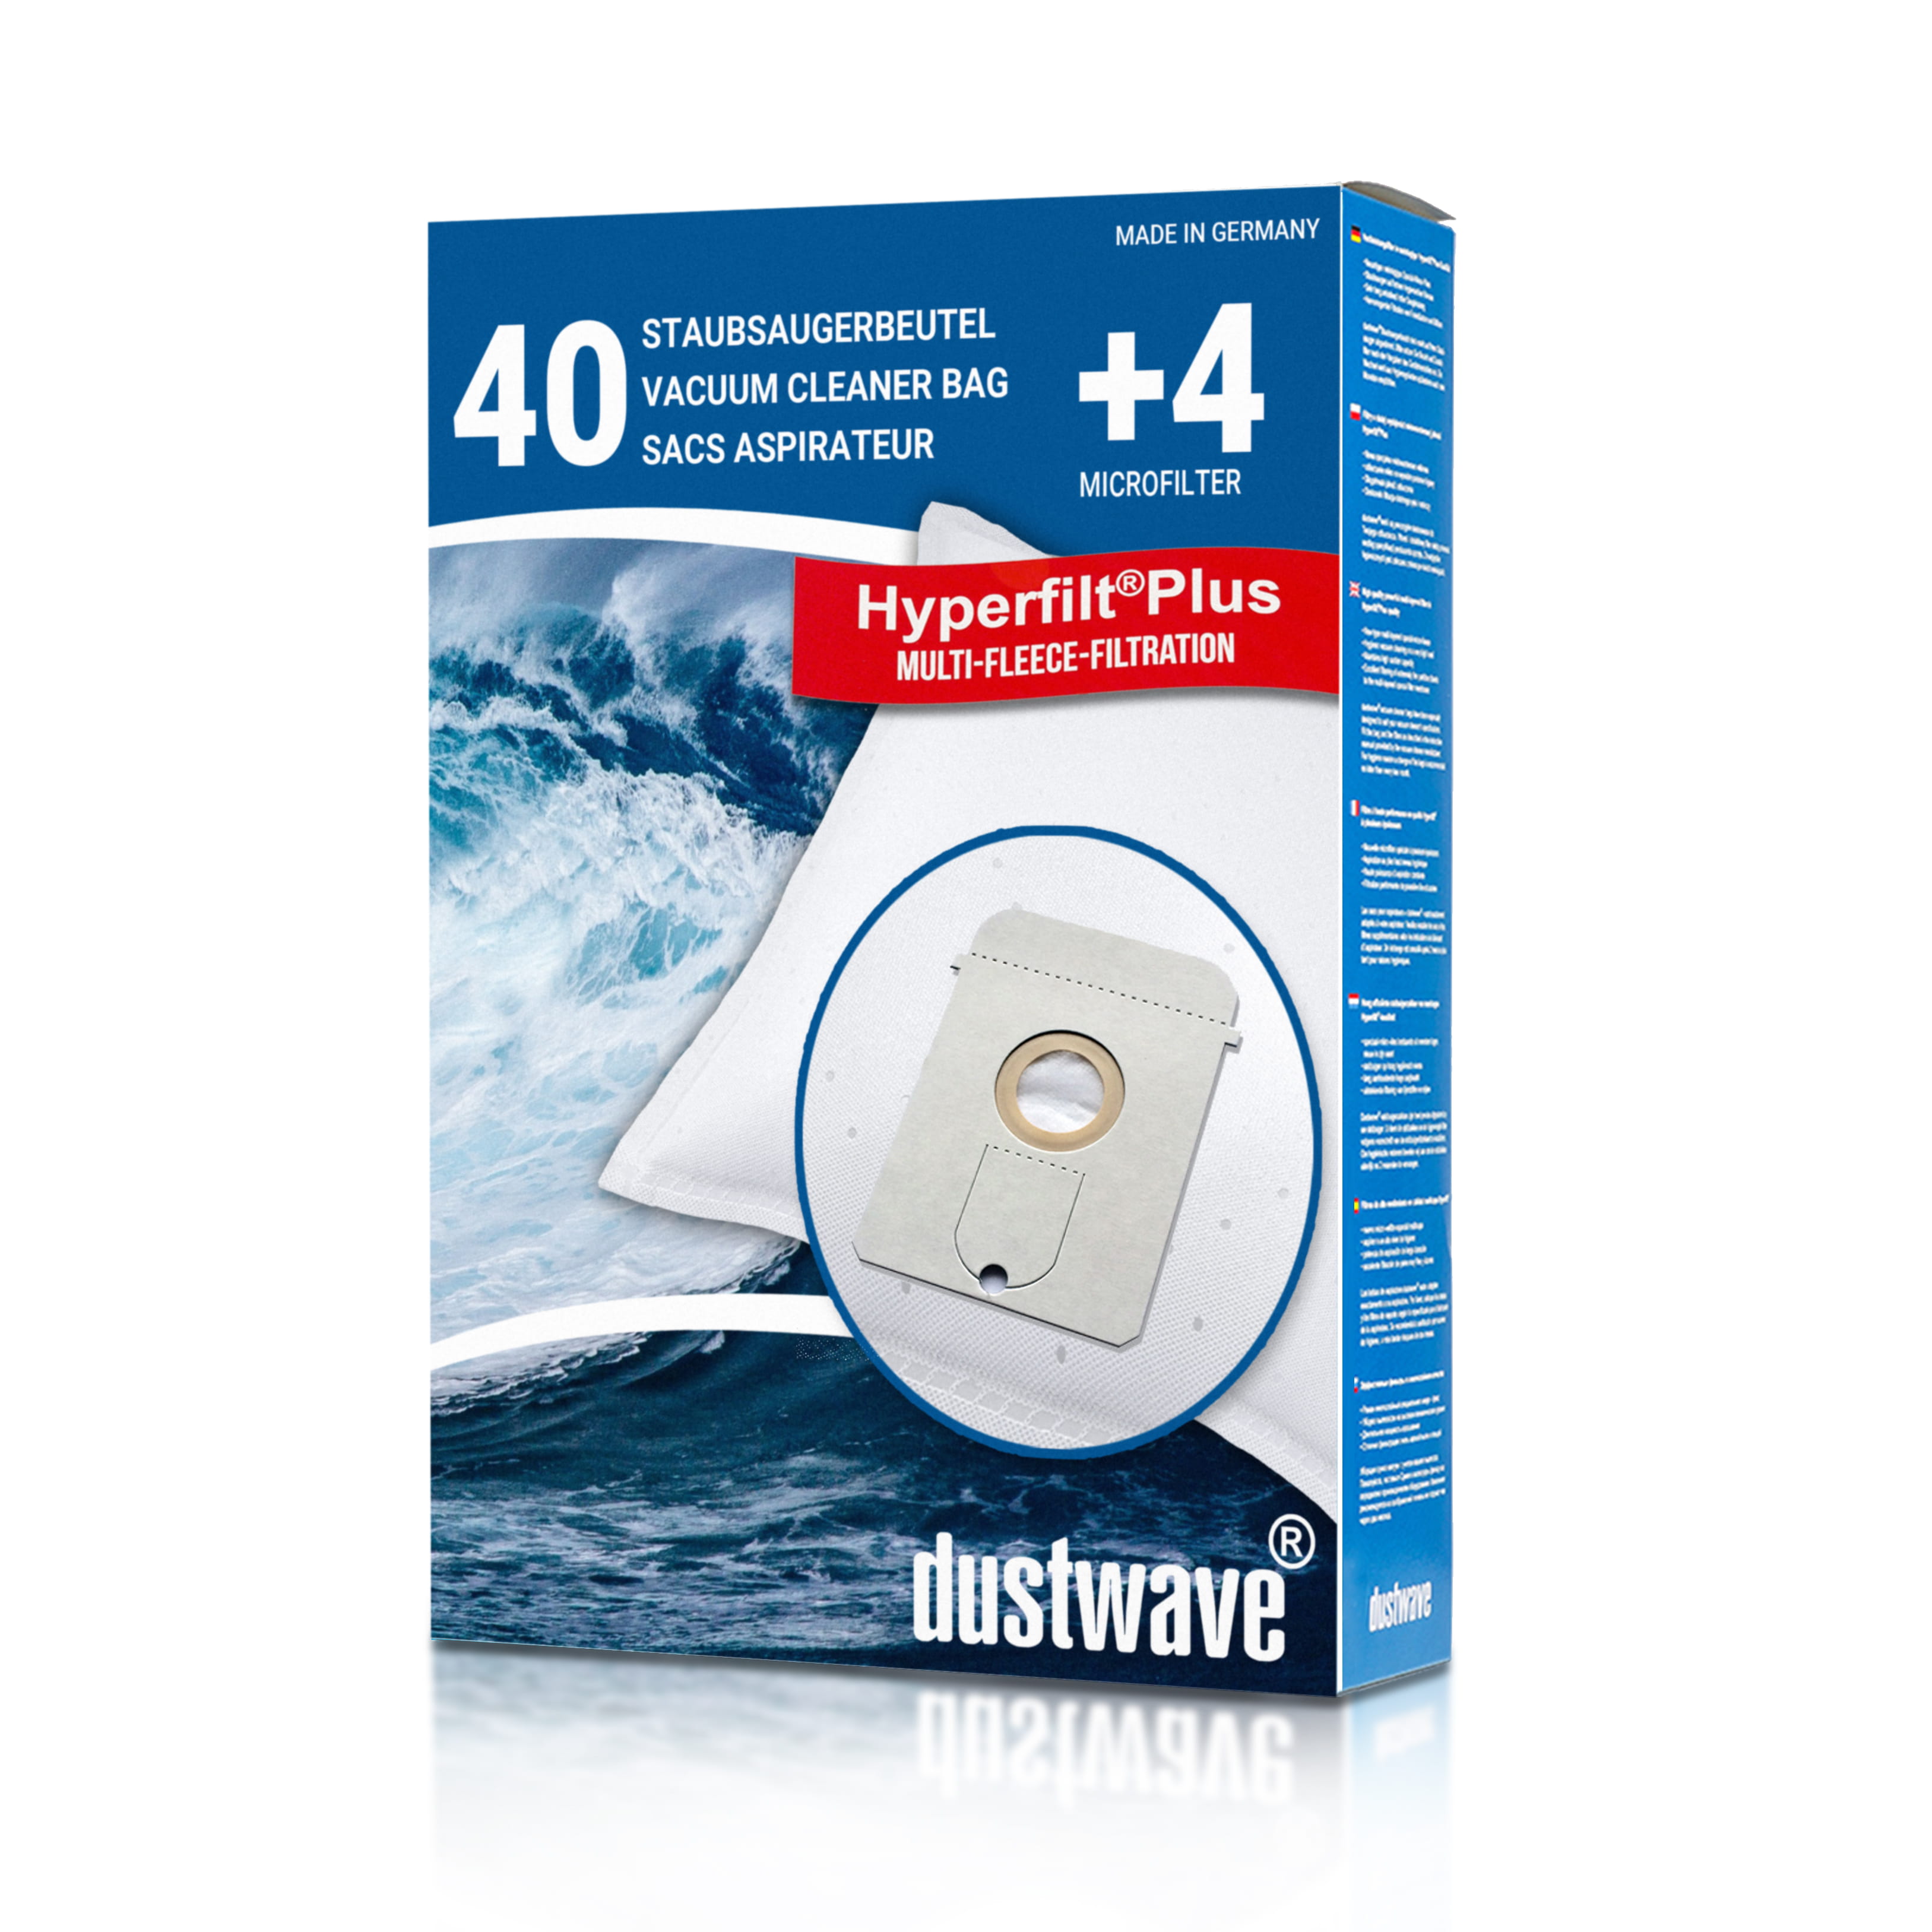 Dustwave® 40 Staubsaugerbeutel für AEG Vampyr 6200 Electronic - hocheffizient, mehrlagiges Mikrovlies mit Hygieneverschluss - Made in Germany